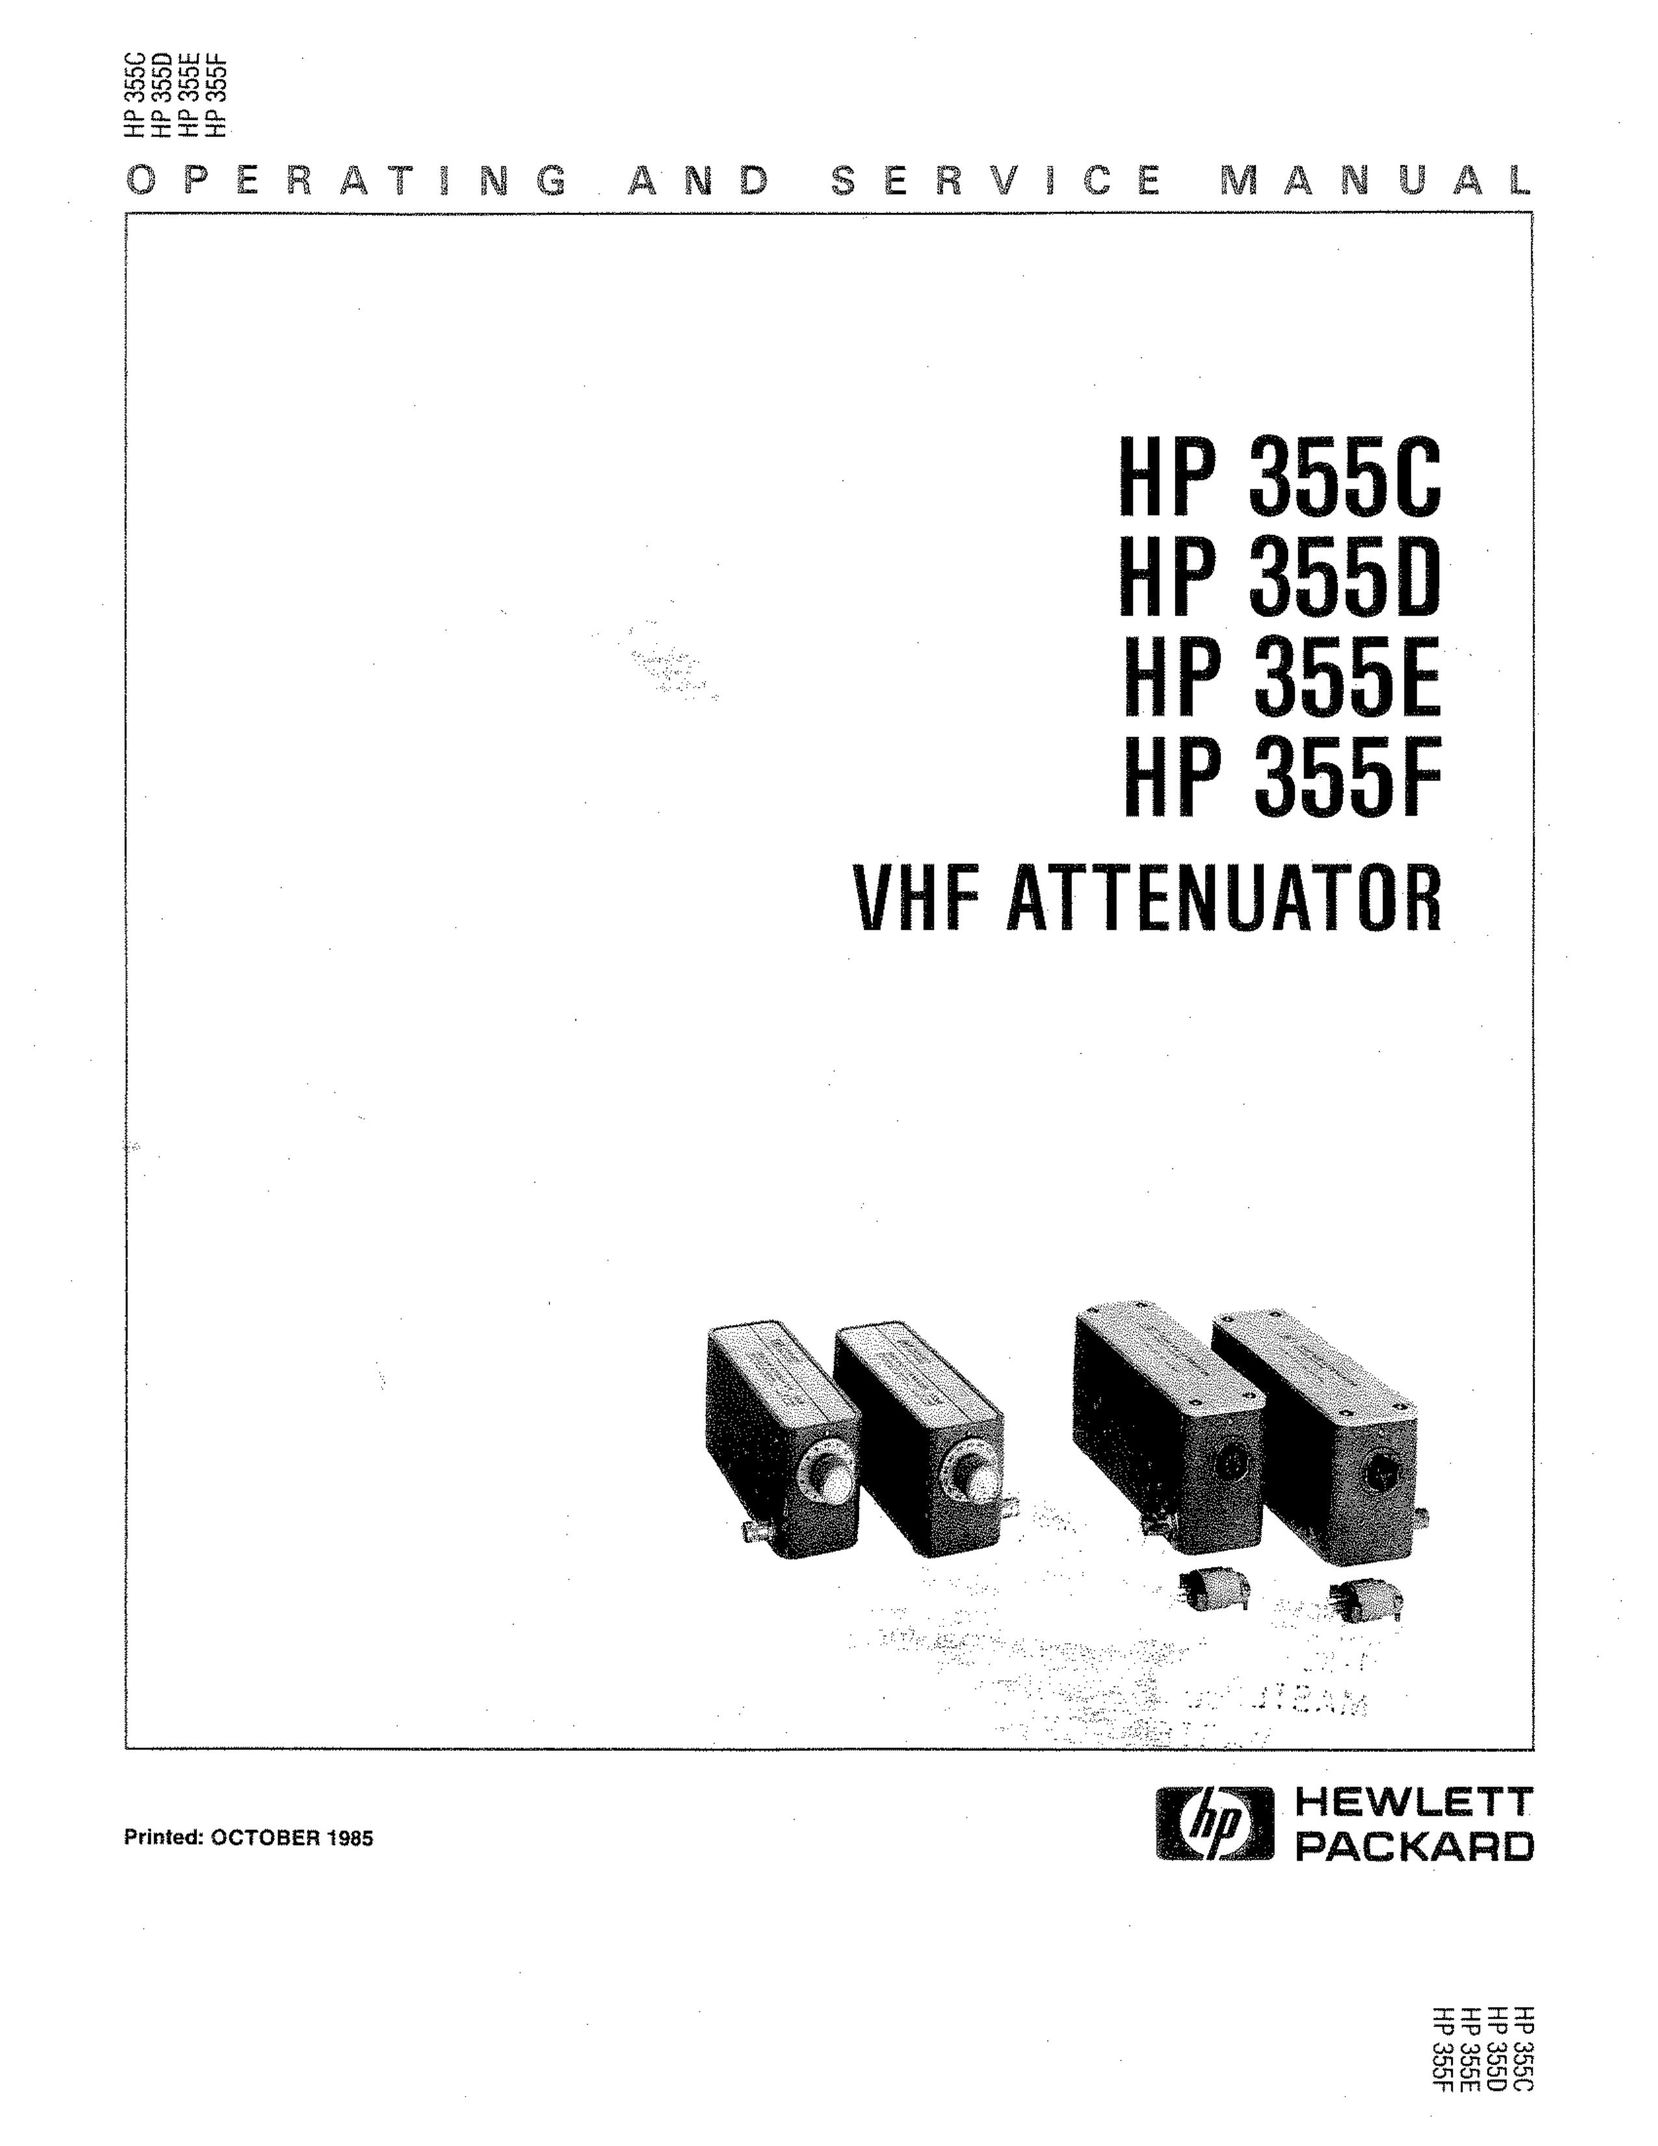 HP (Hewlett-Packard) HP 355E TV Antenna User Manual